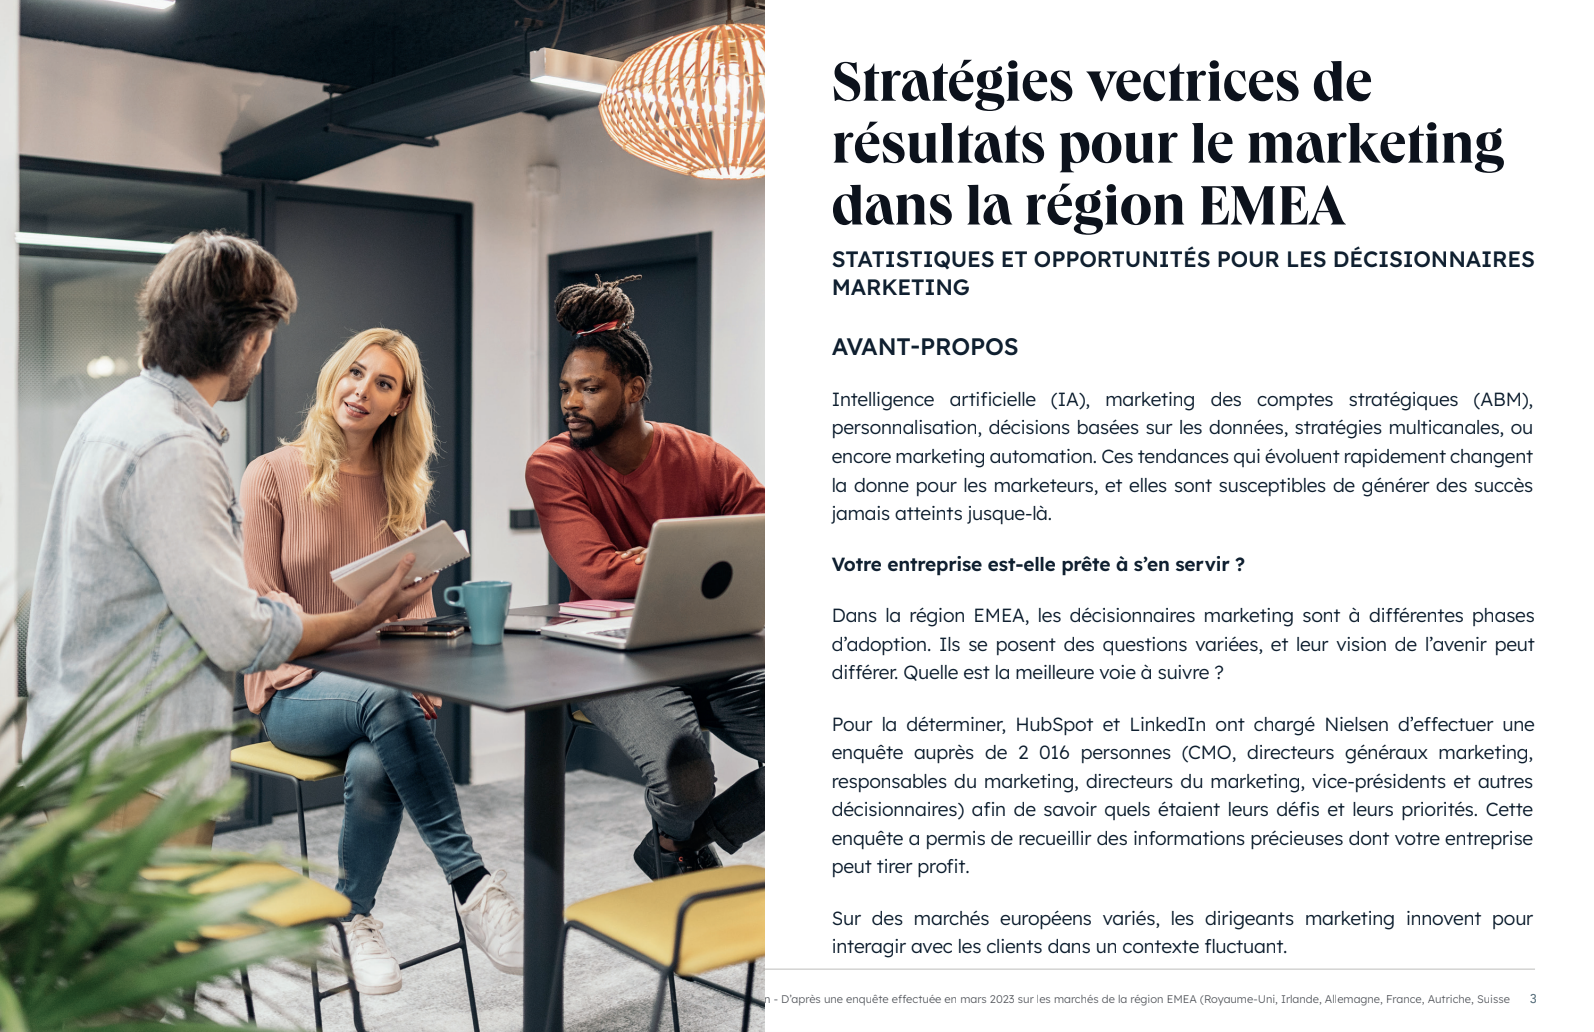 Stratégies vectrices de résultats pour le marketing dans la région EMEA